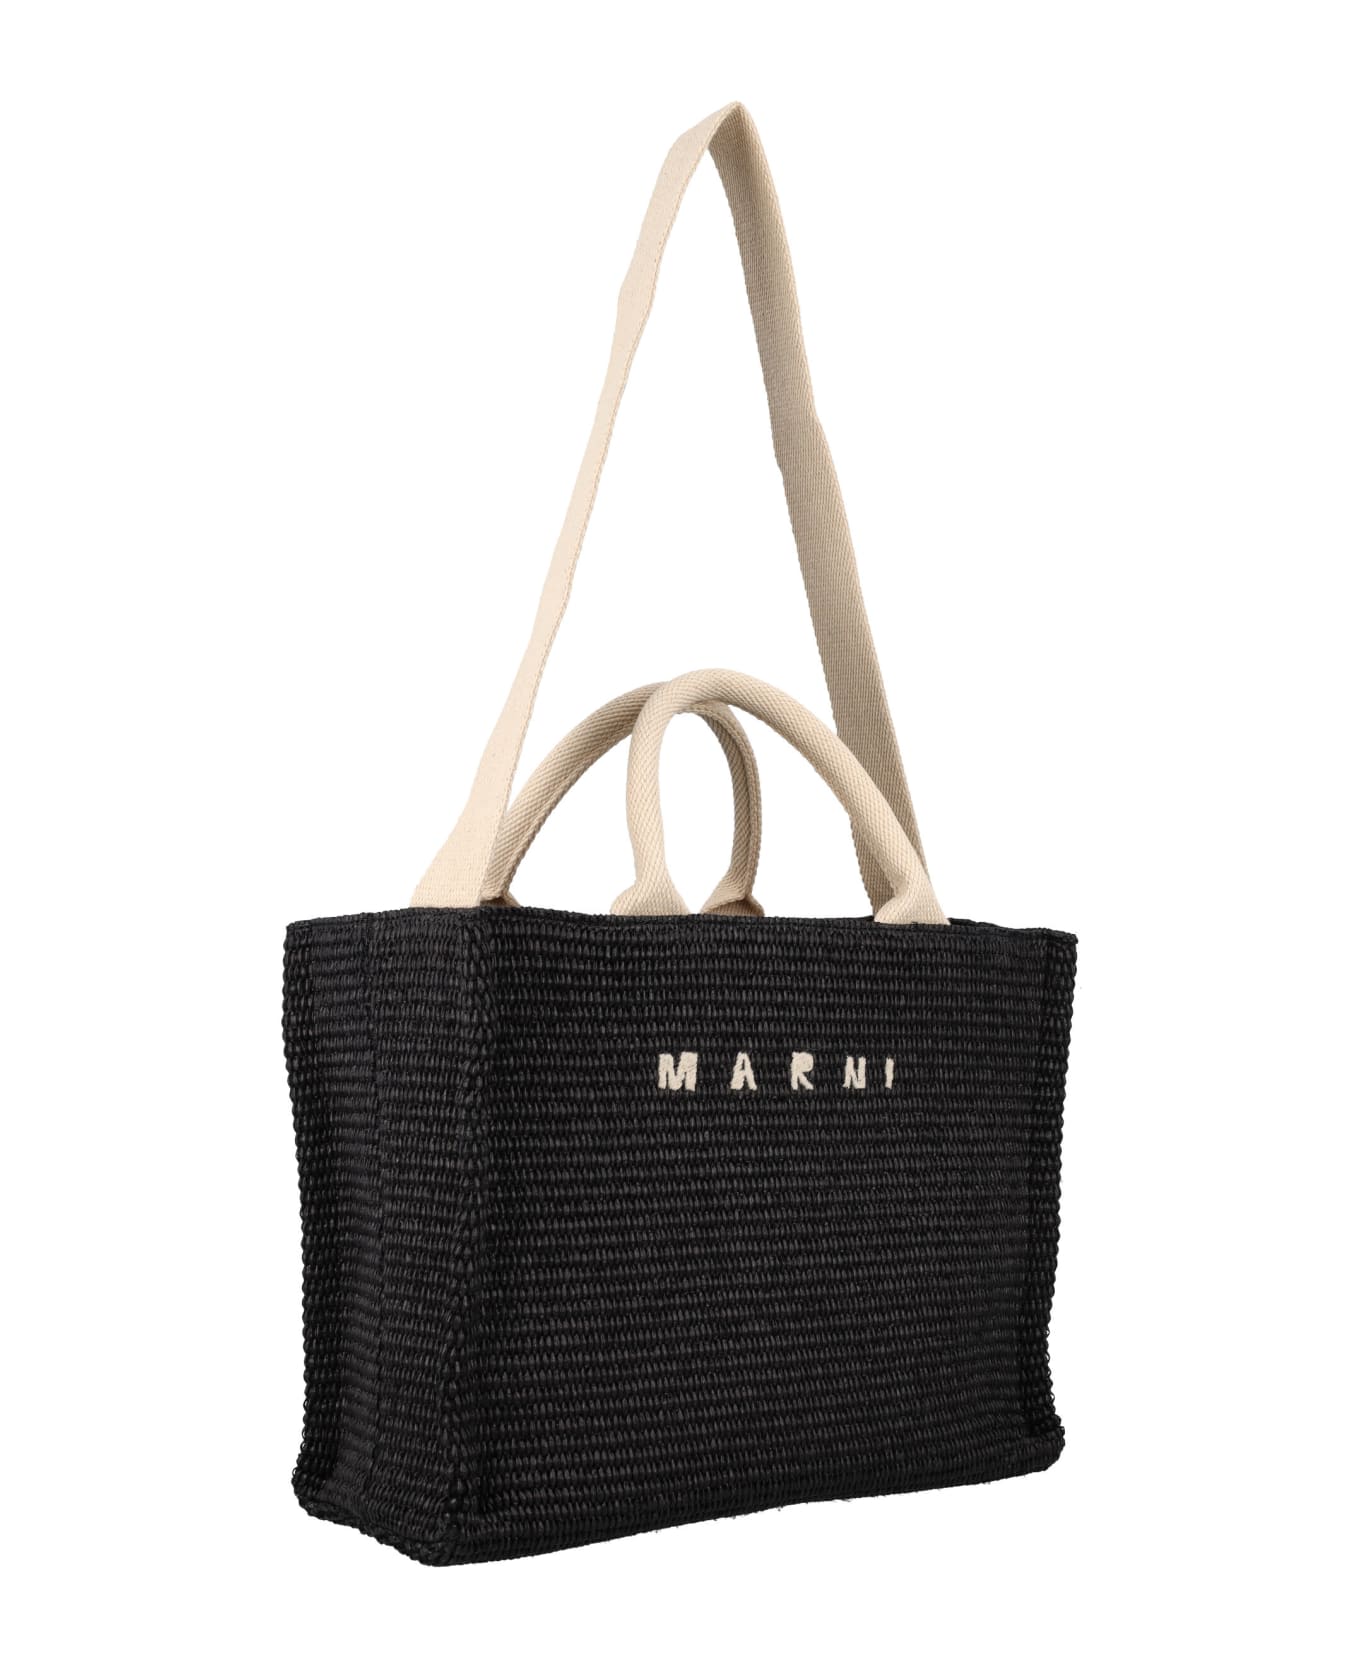 Marni Small Raffia Tote Bag - BLACK